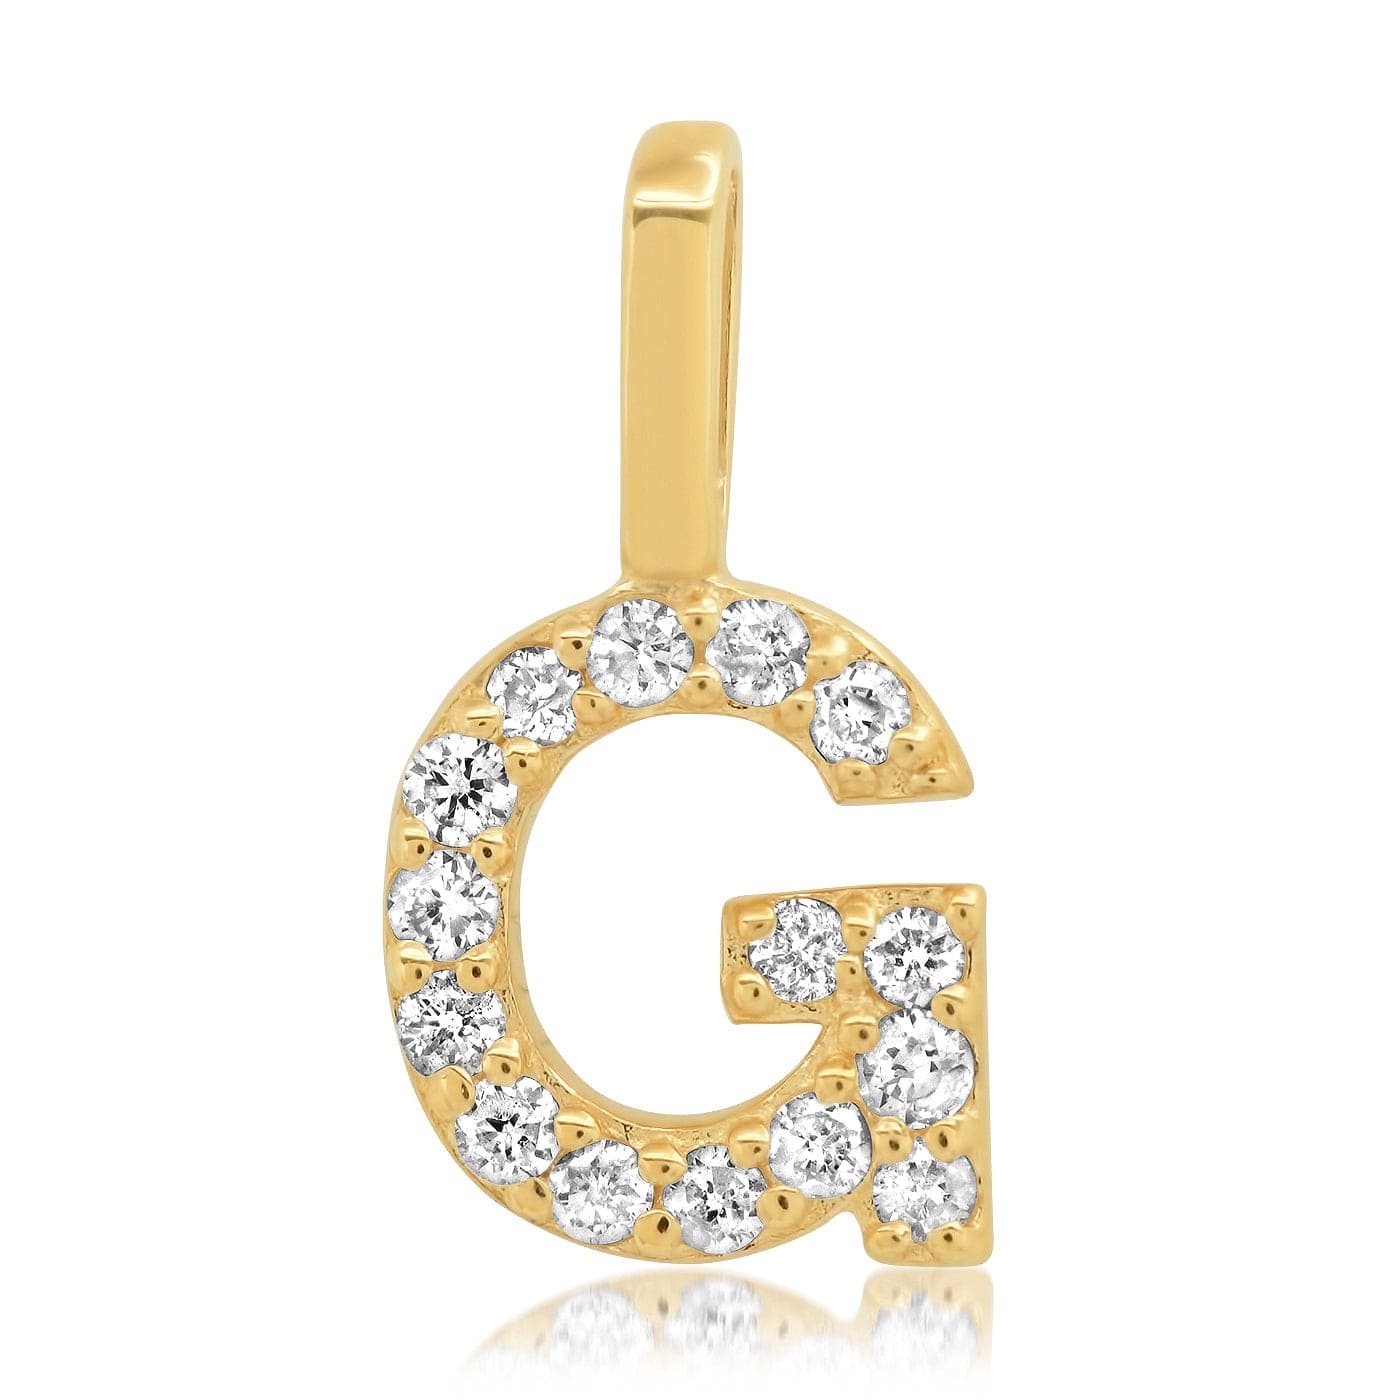 TAI JEWELRY Necklace G 14K Diamond Pavé Monogram Pendant